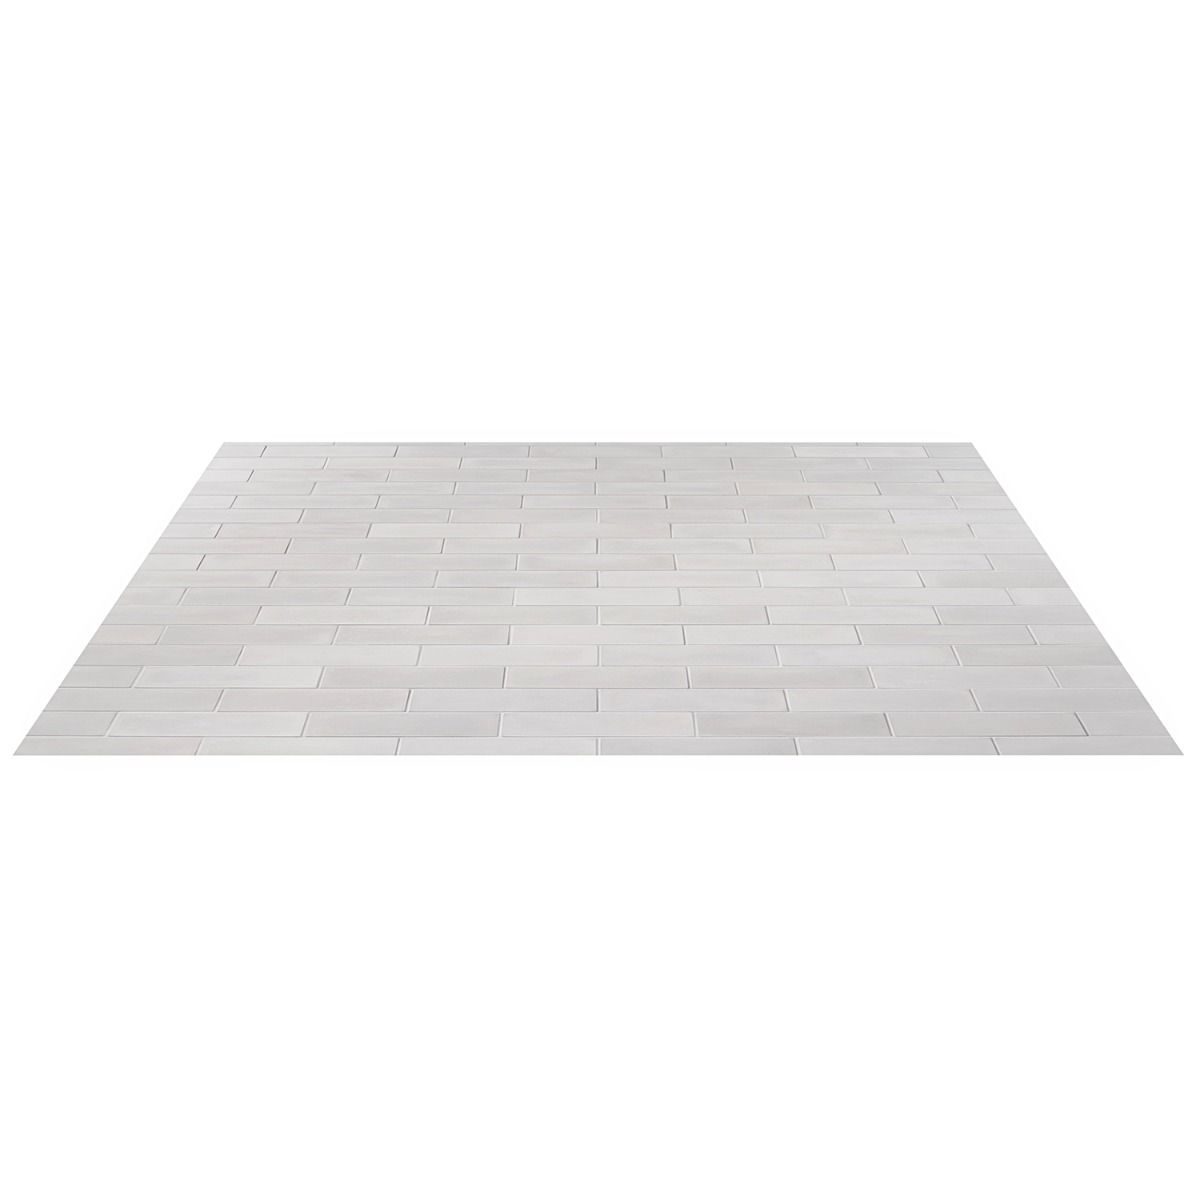 Color One Mist Gray 2x8 Matte Cement Tile | Tilebar.com